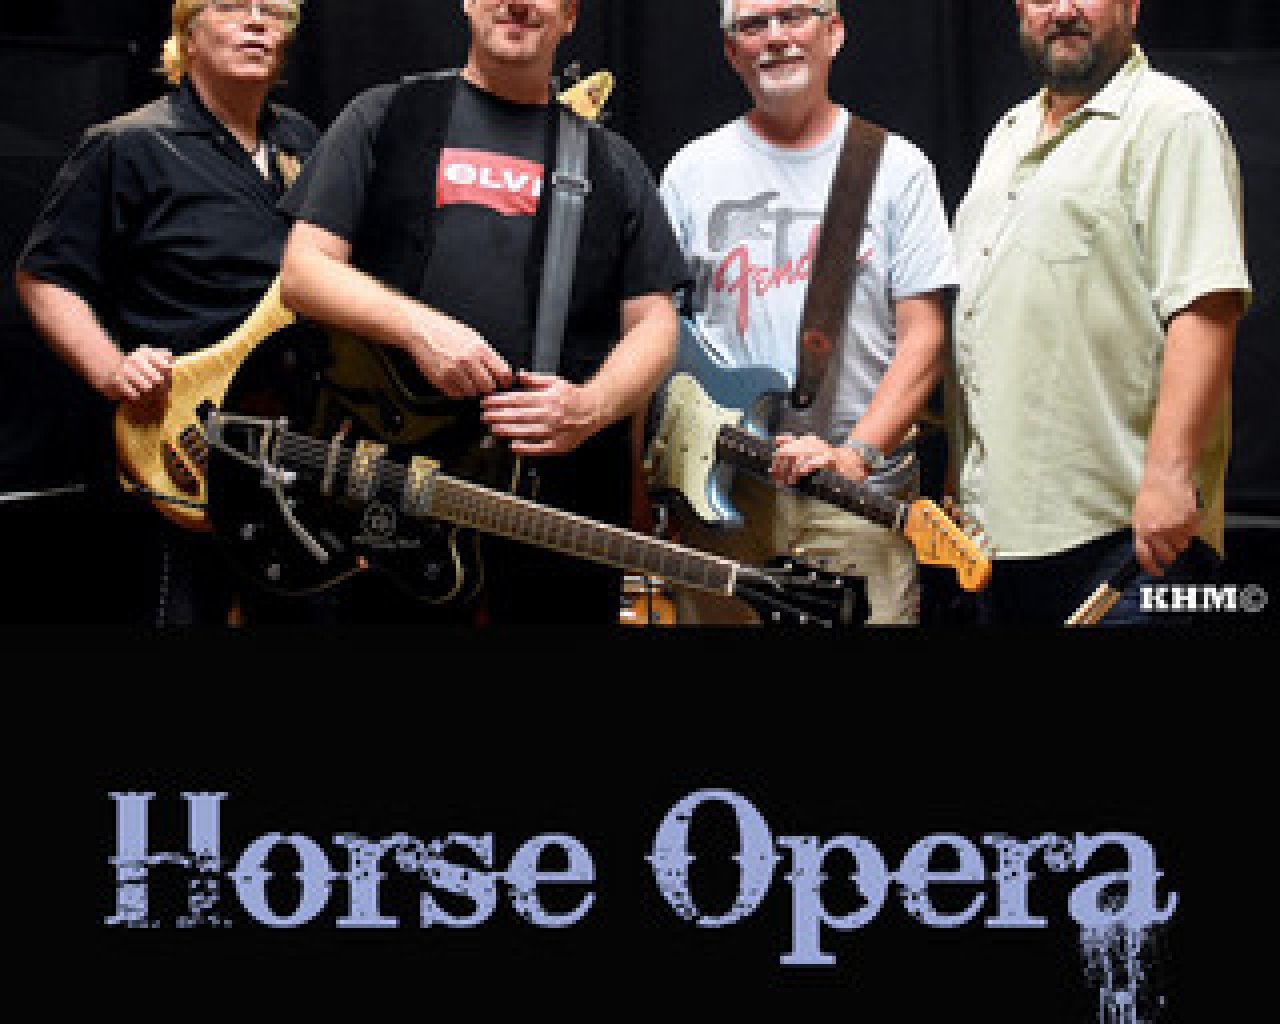 Horse Opera